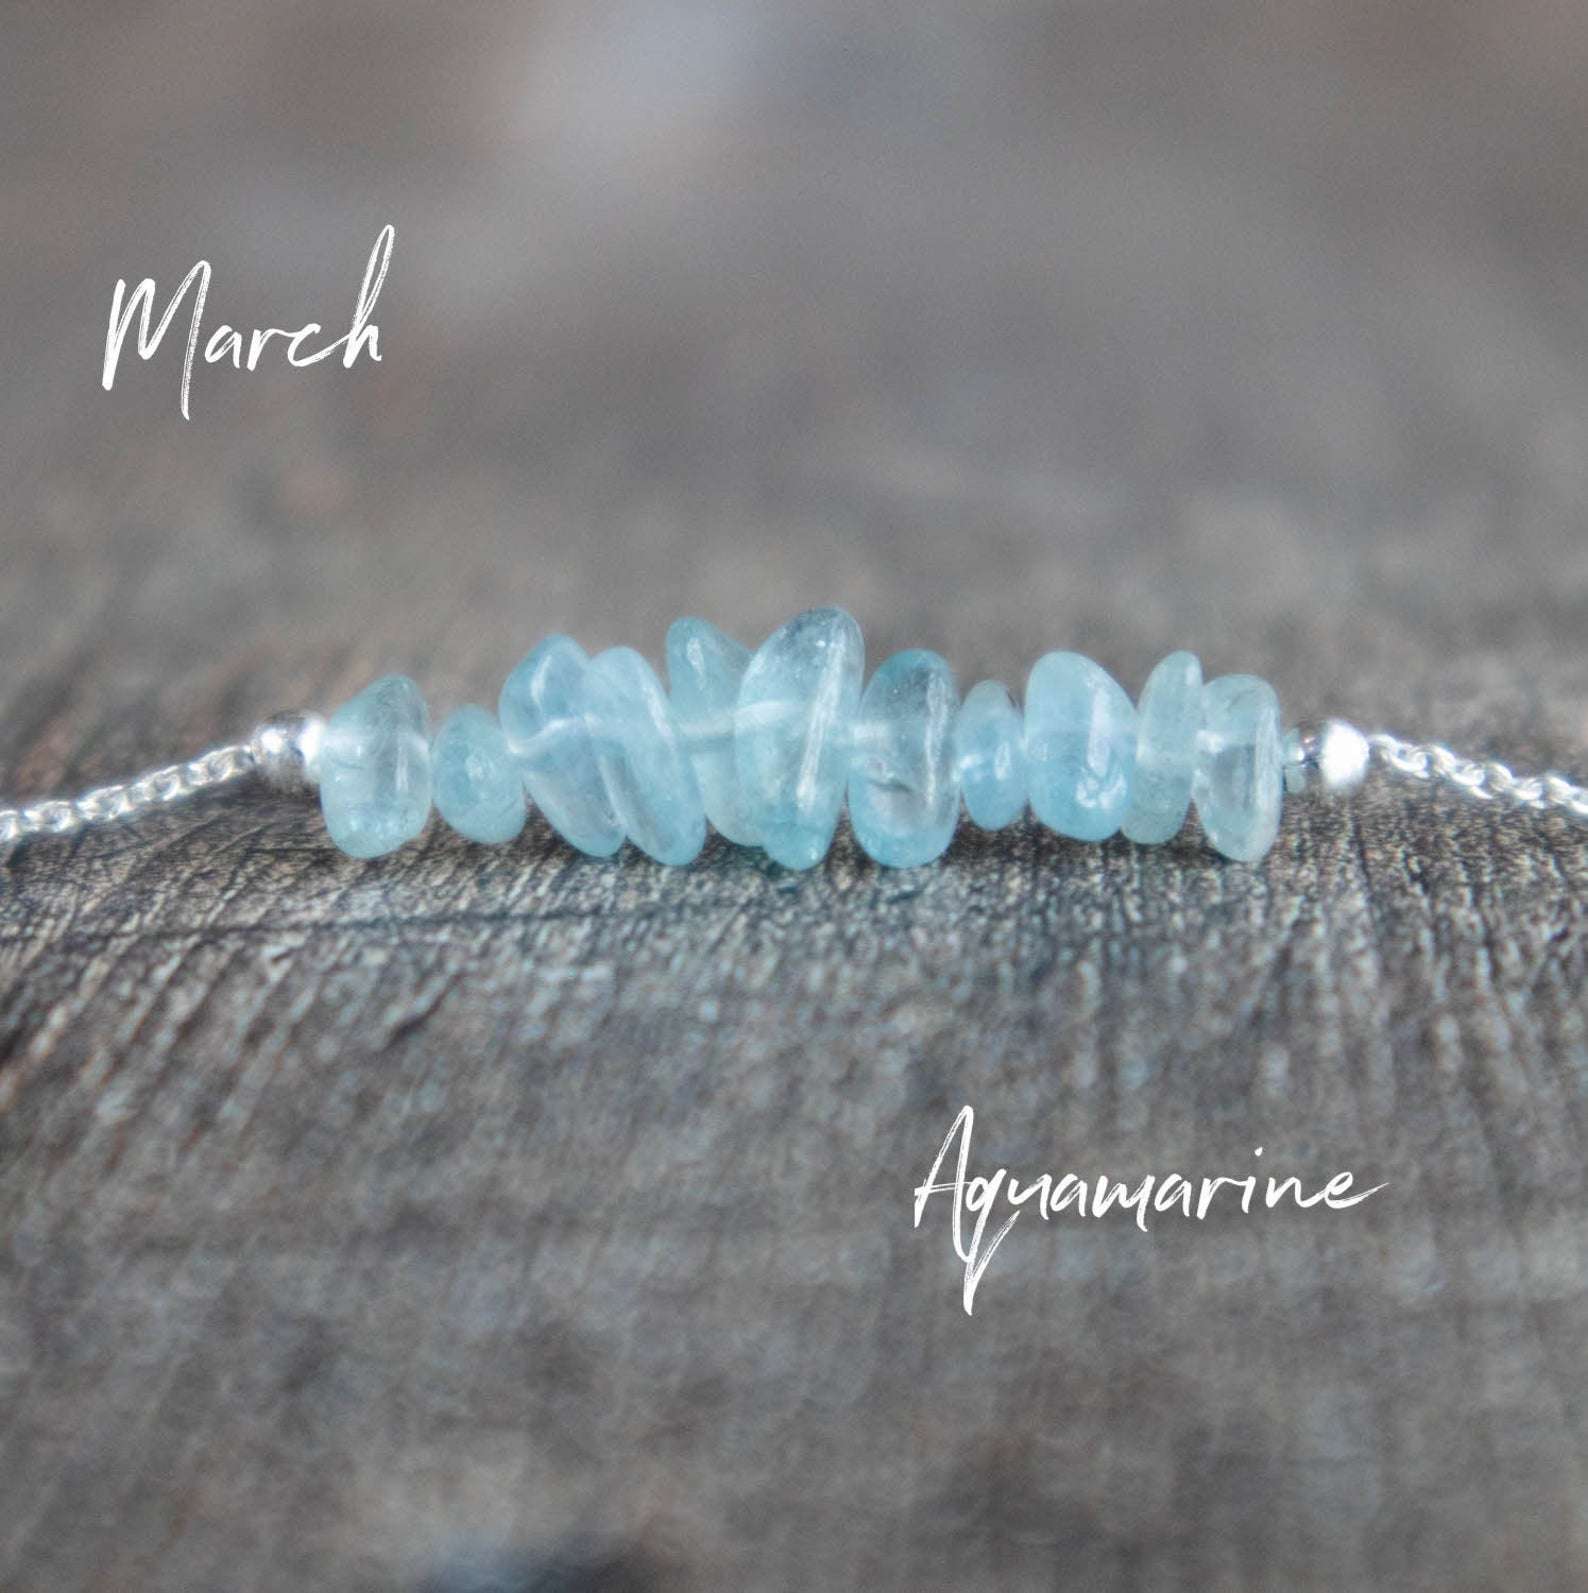 Aquamarine Power Bead Crystal Bracelet - Crystal Gemstone Bracelet - Soul  Cafe Information Gift Tag : Amazon.co.uk: Handmade Products